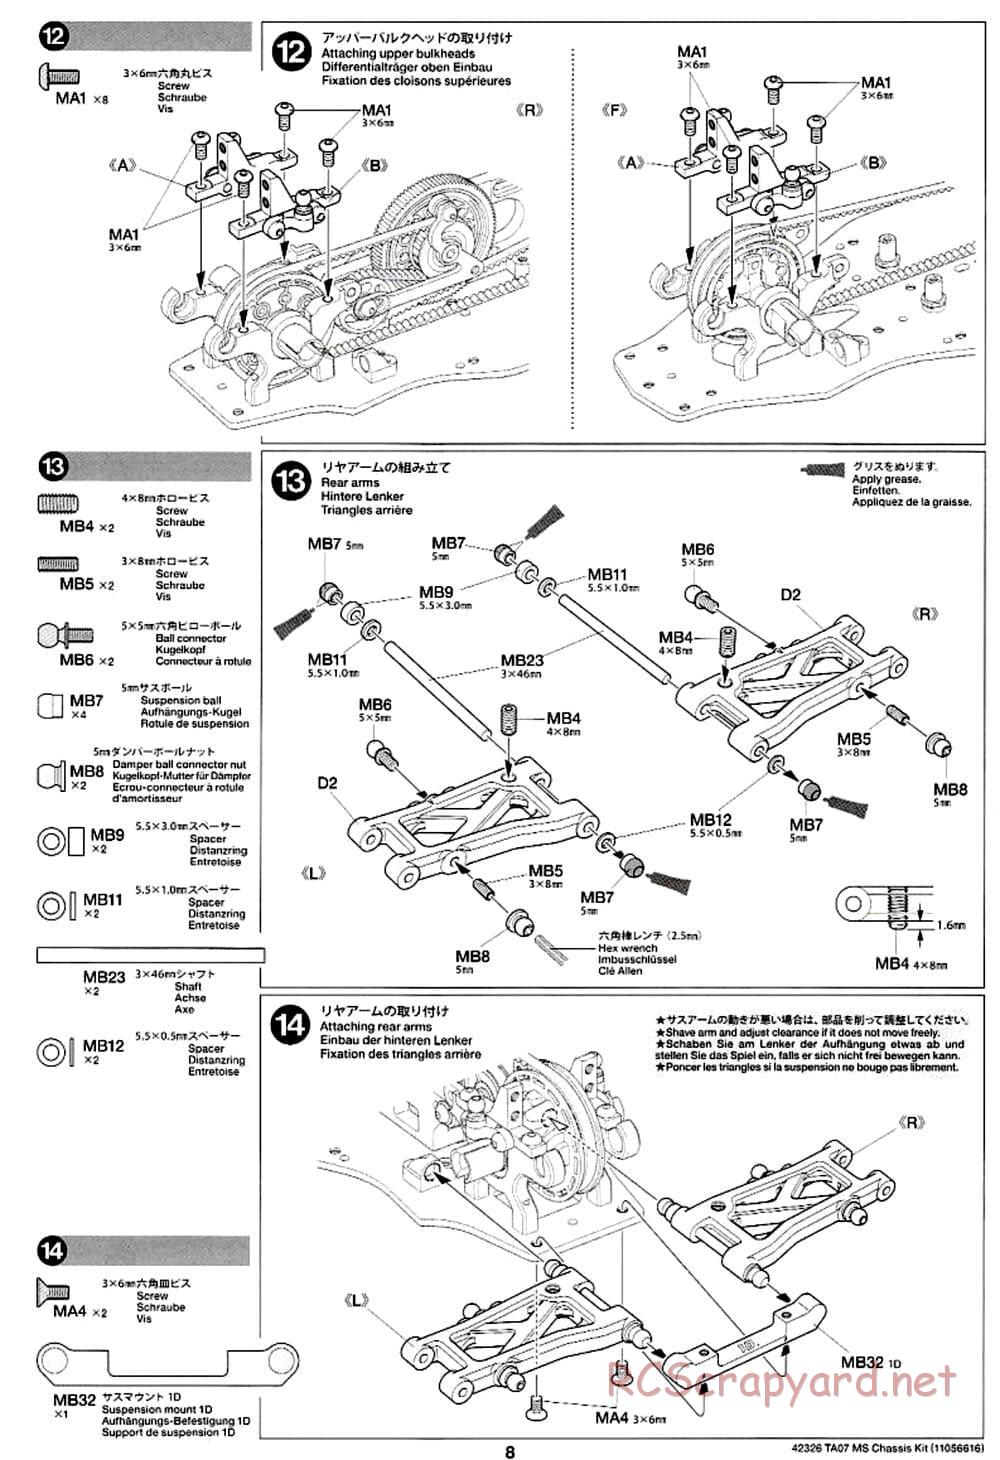 Tamiya - TA07 MS Chassis - Manual - Page 8